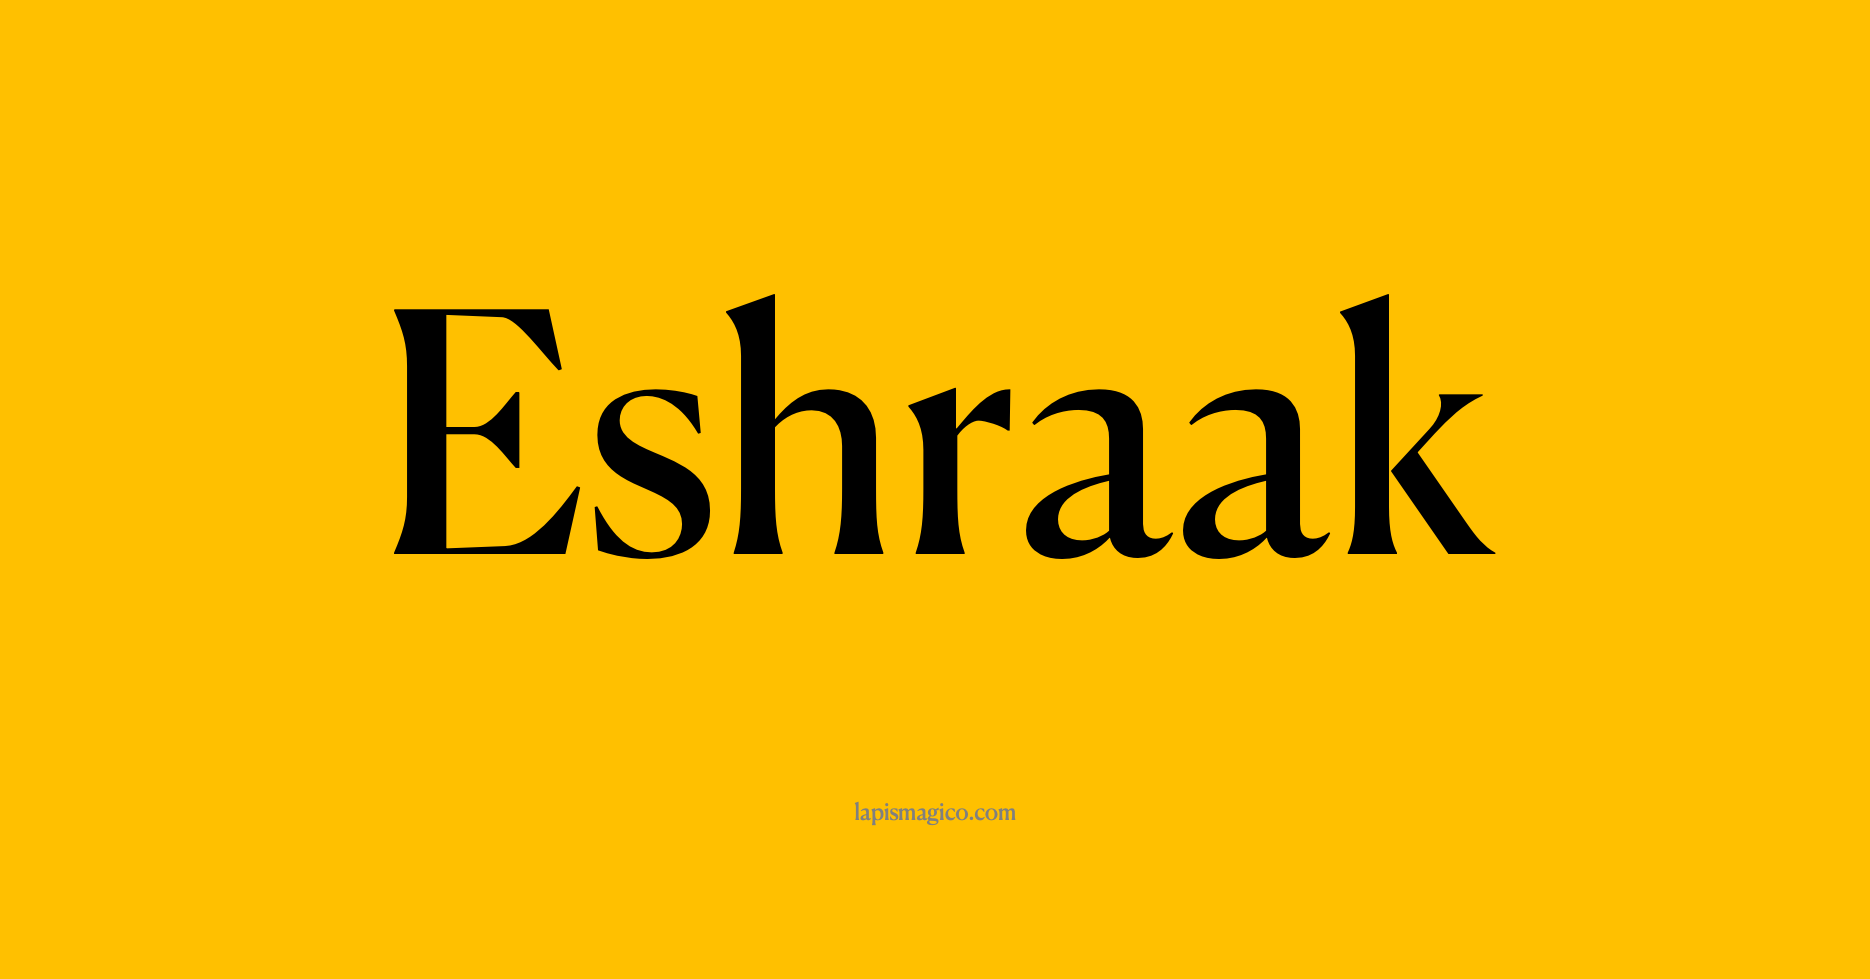 Nome Eshraak